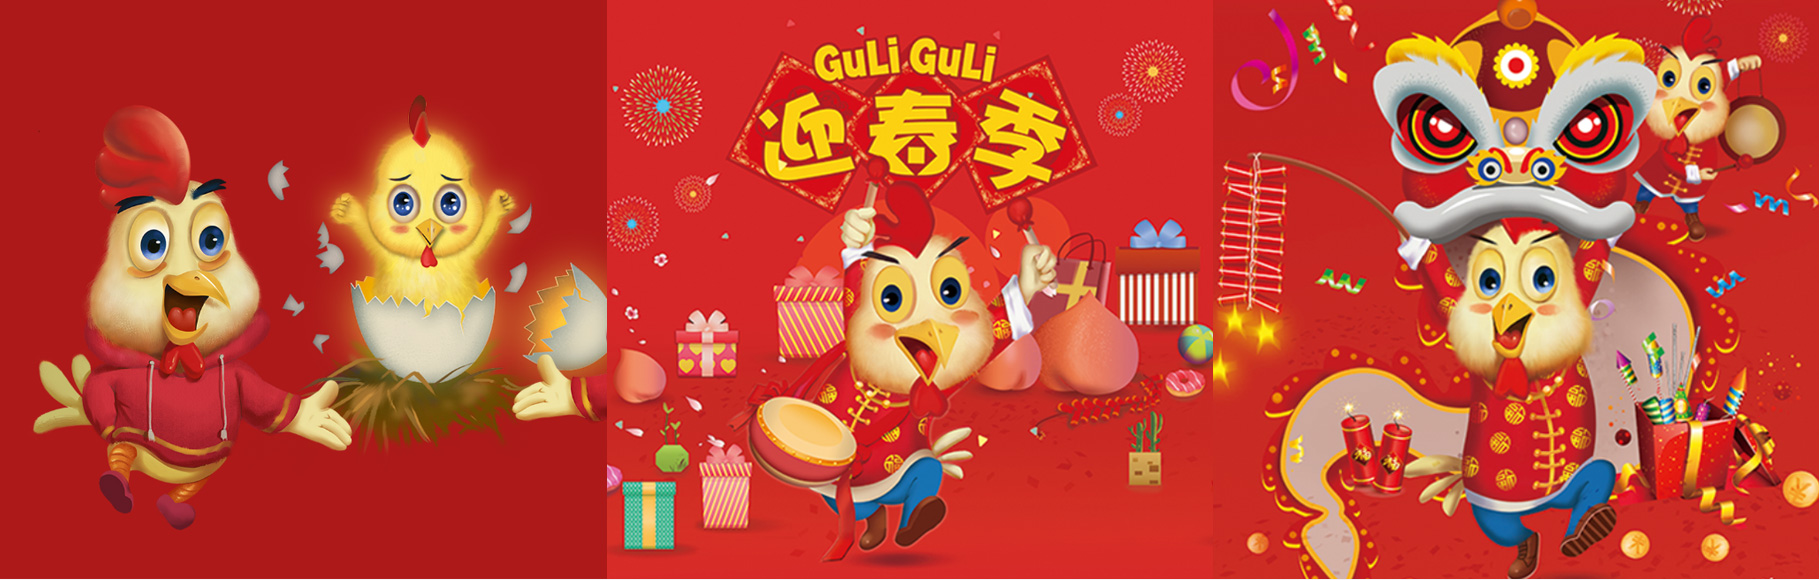 GuLiGuLi 迎新春|慧臻品牌整合传播